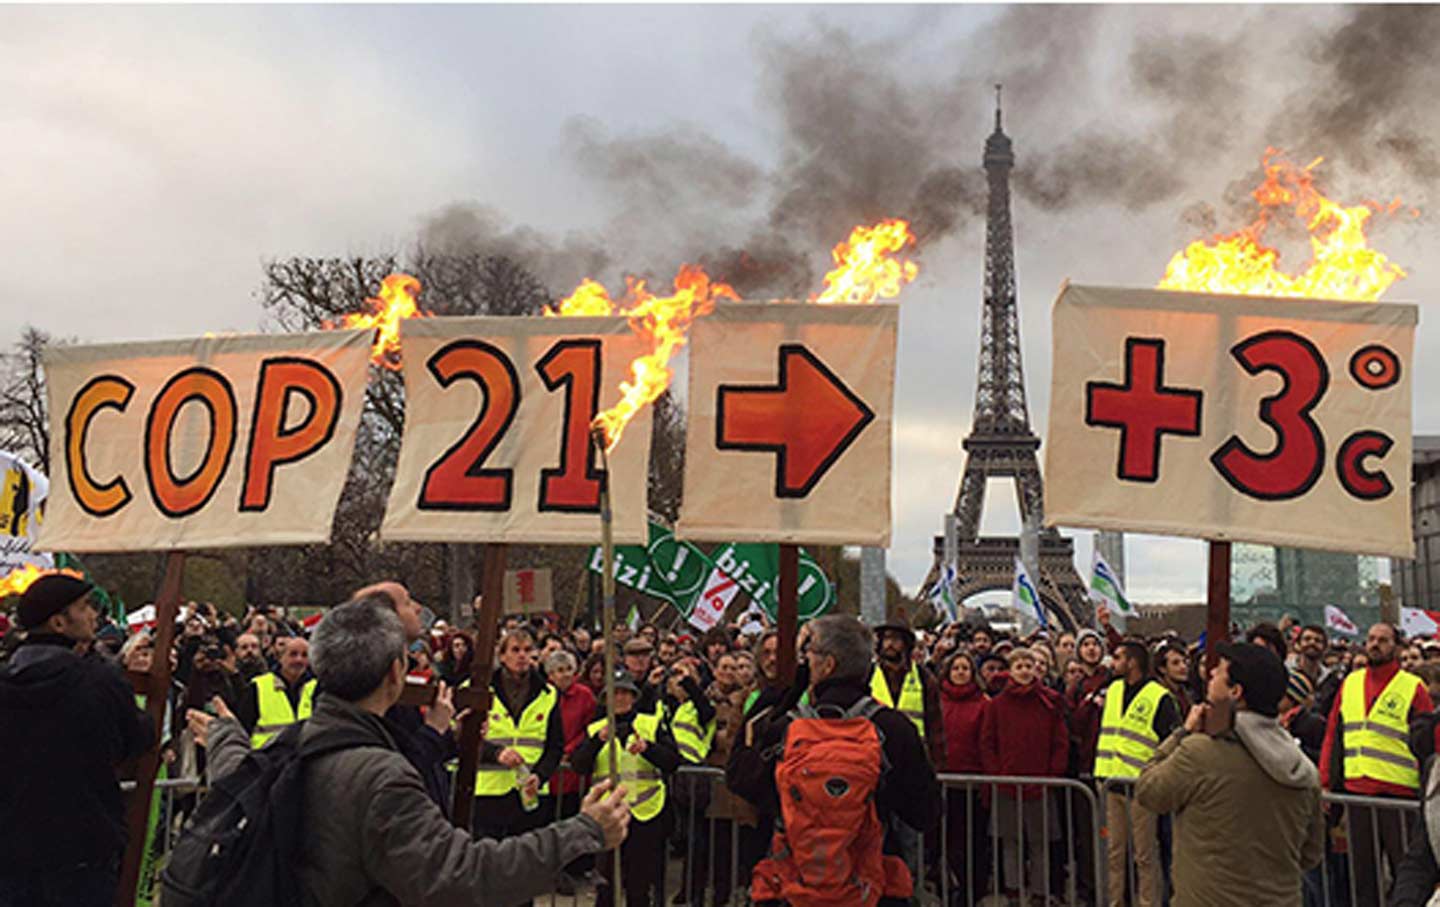 Protestors at COP 21